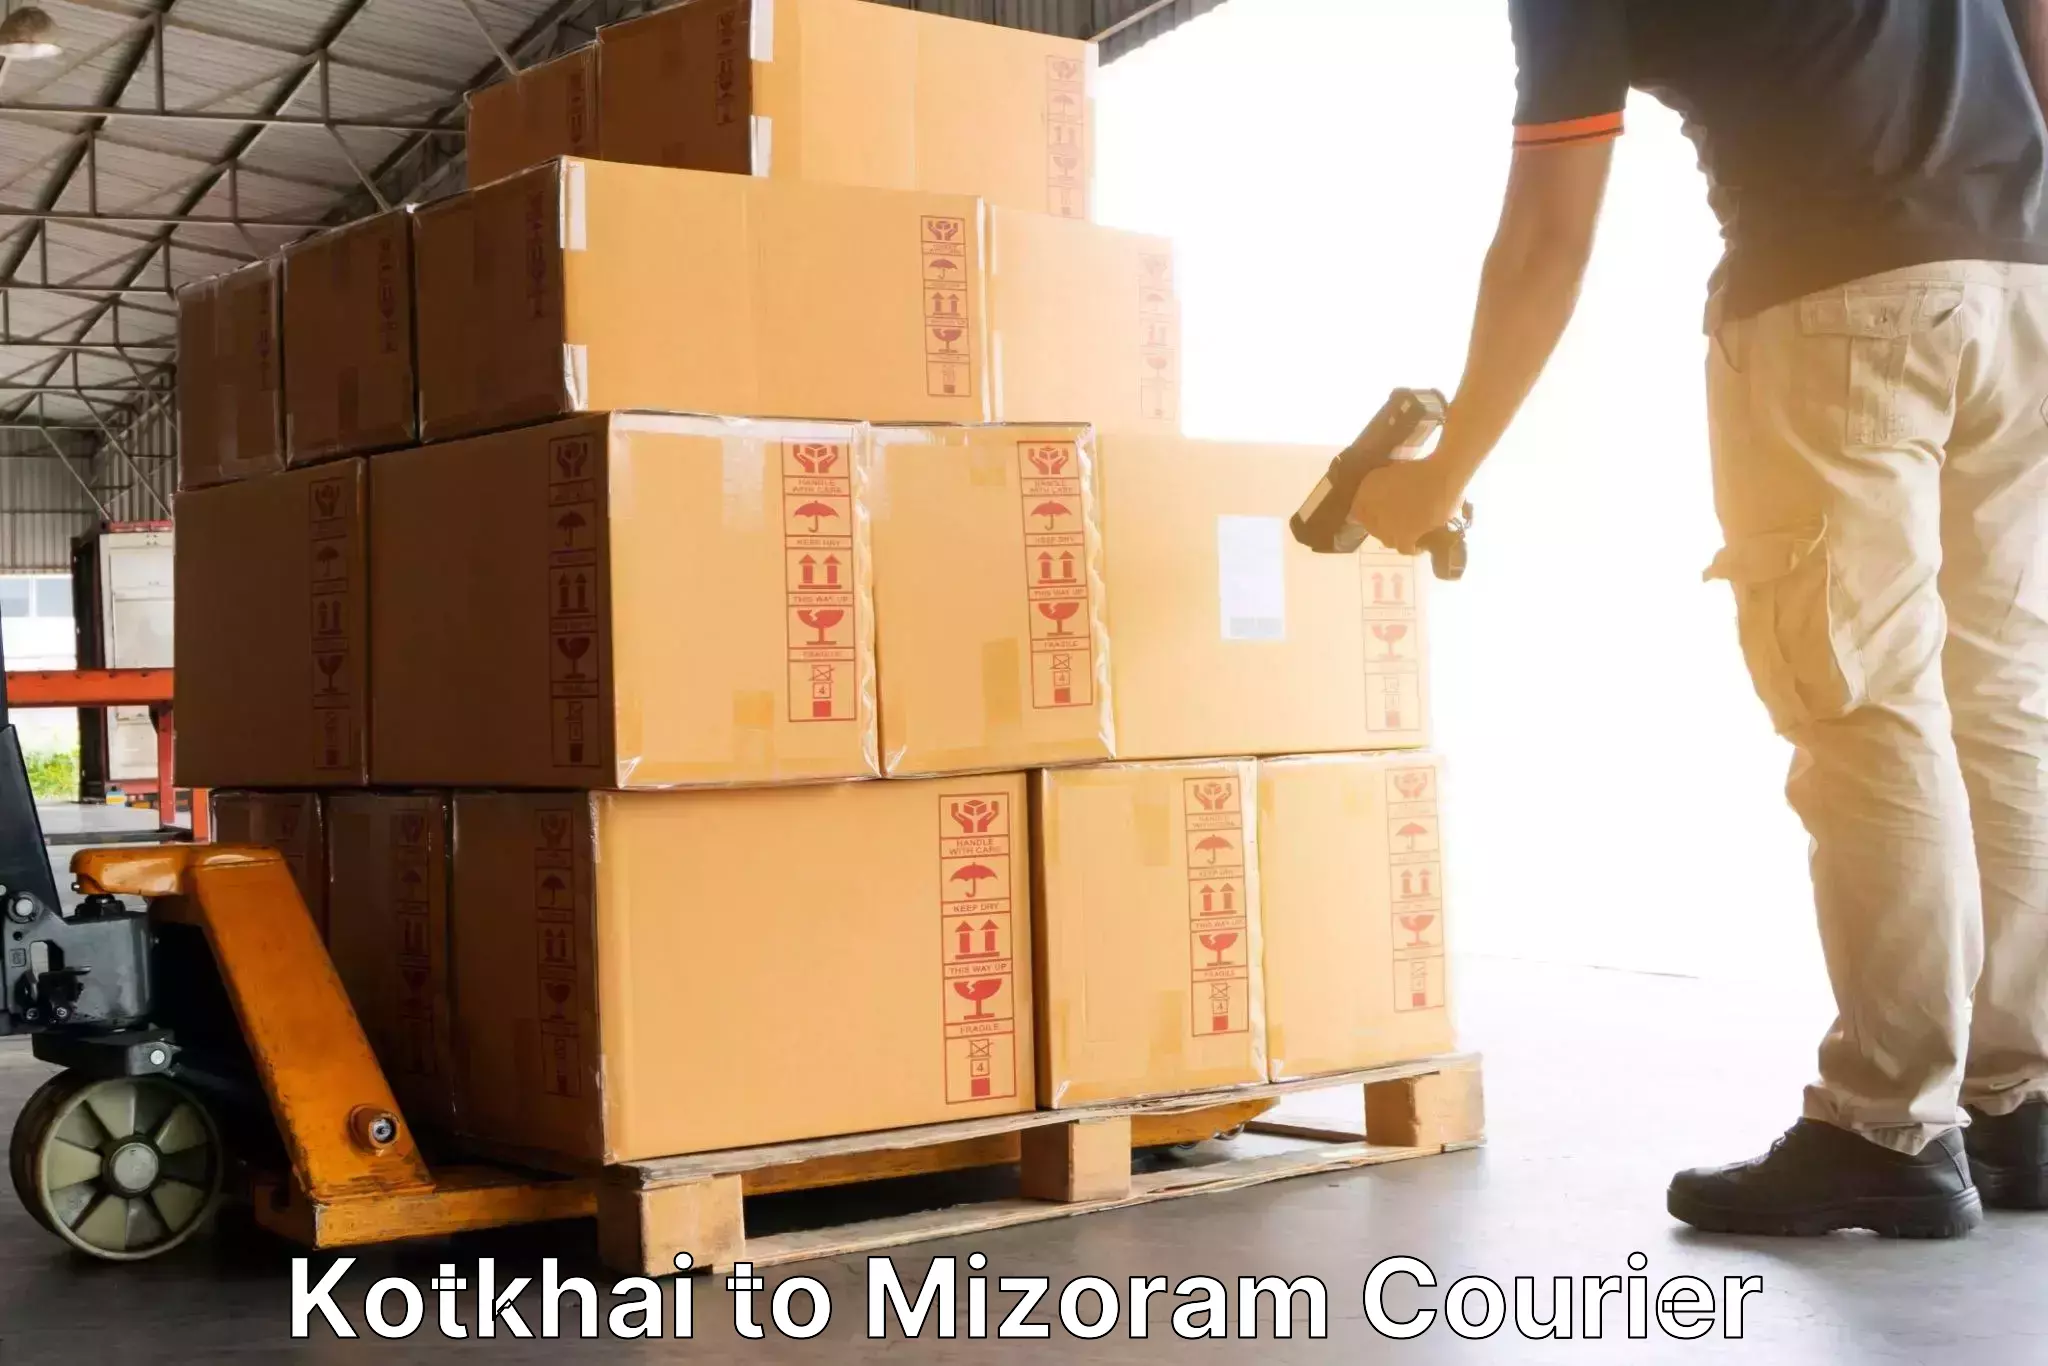 Next-day freight services Kotkhai to Mizoram University Aizawl